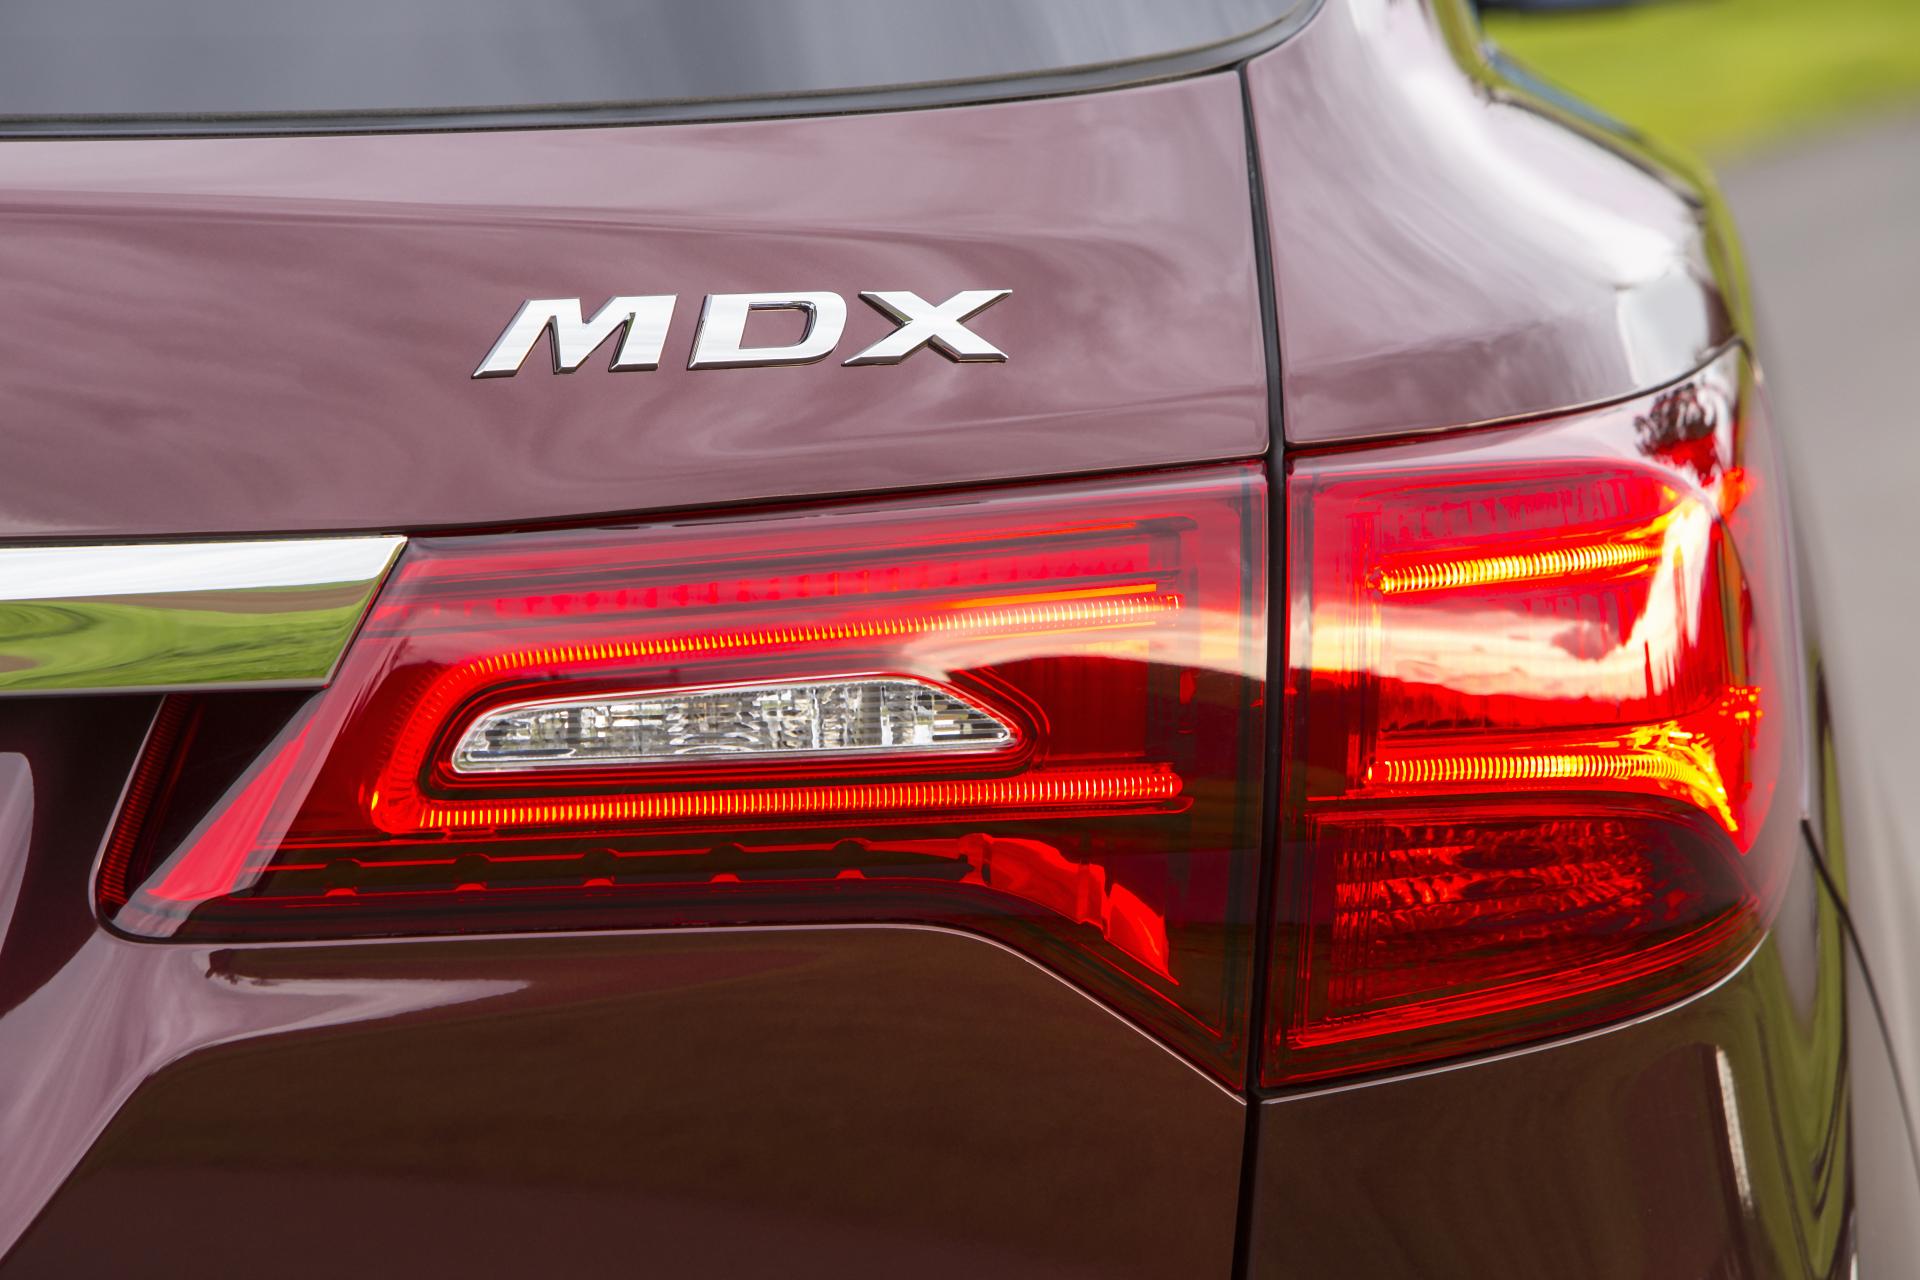 2014 Acura MDX